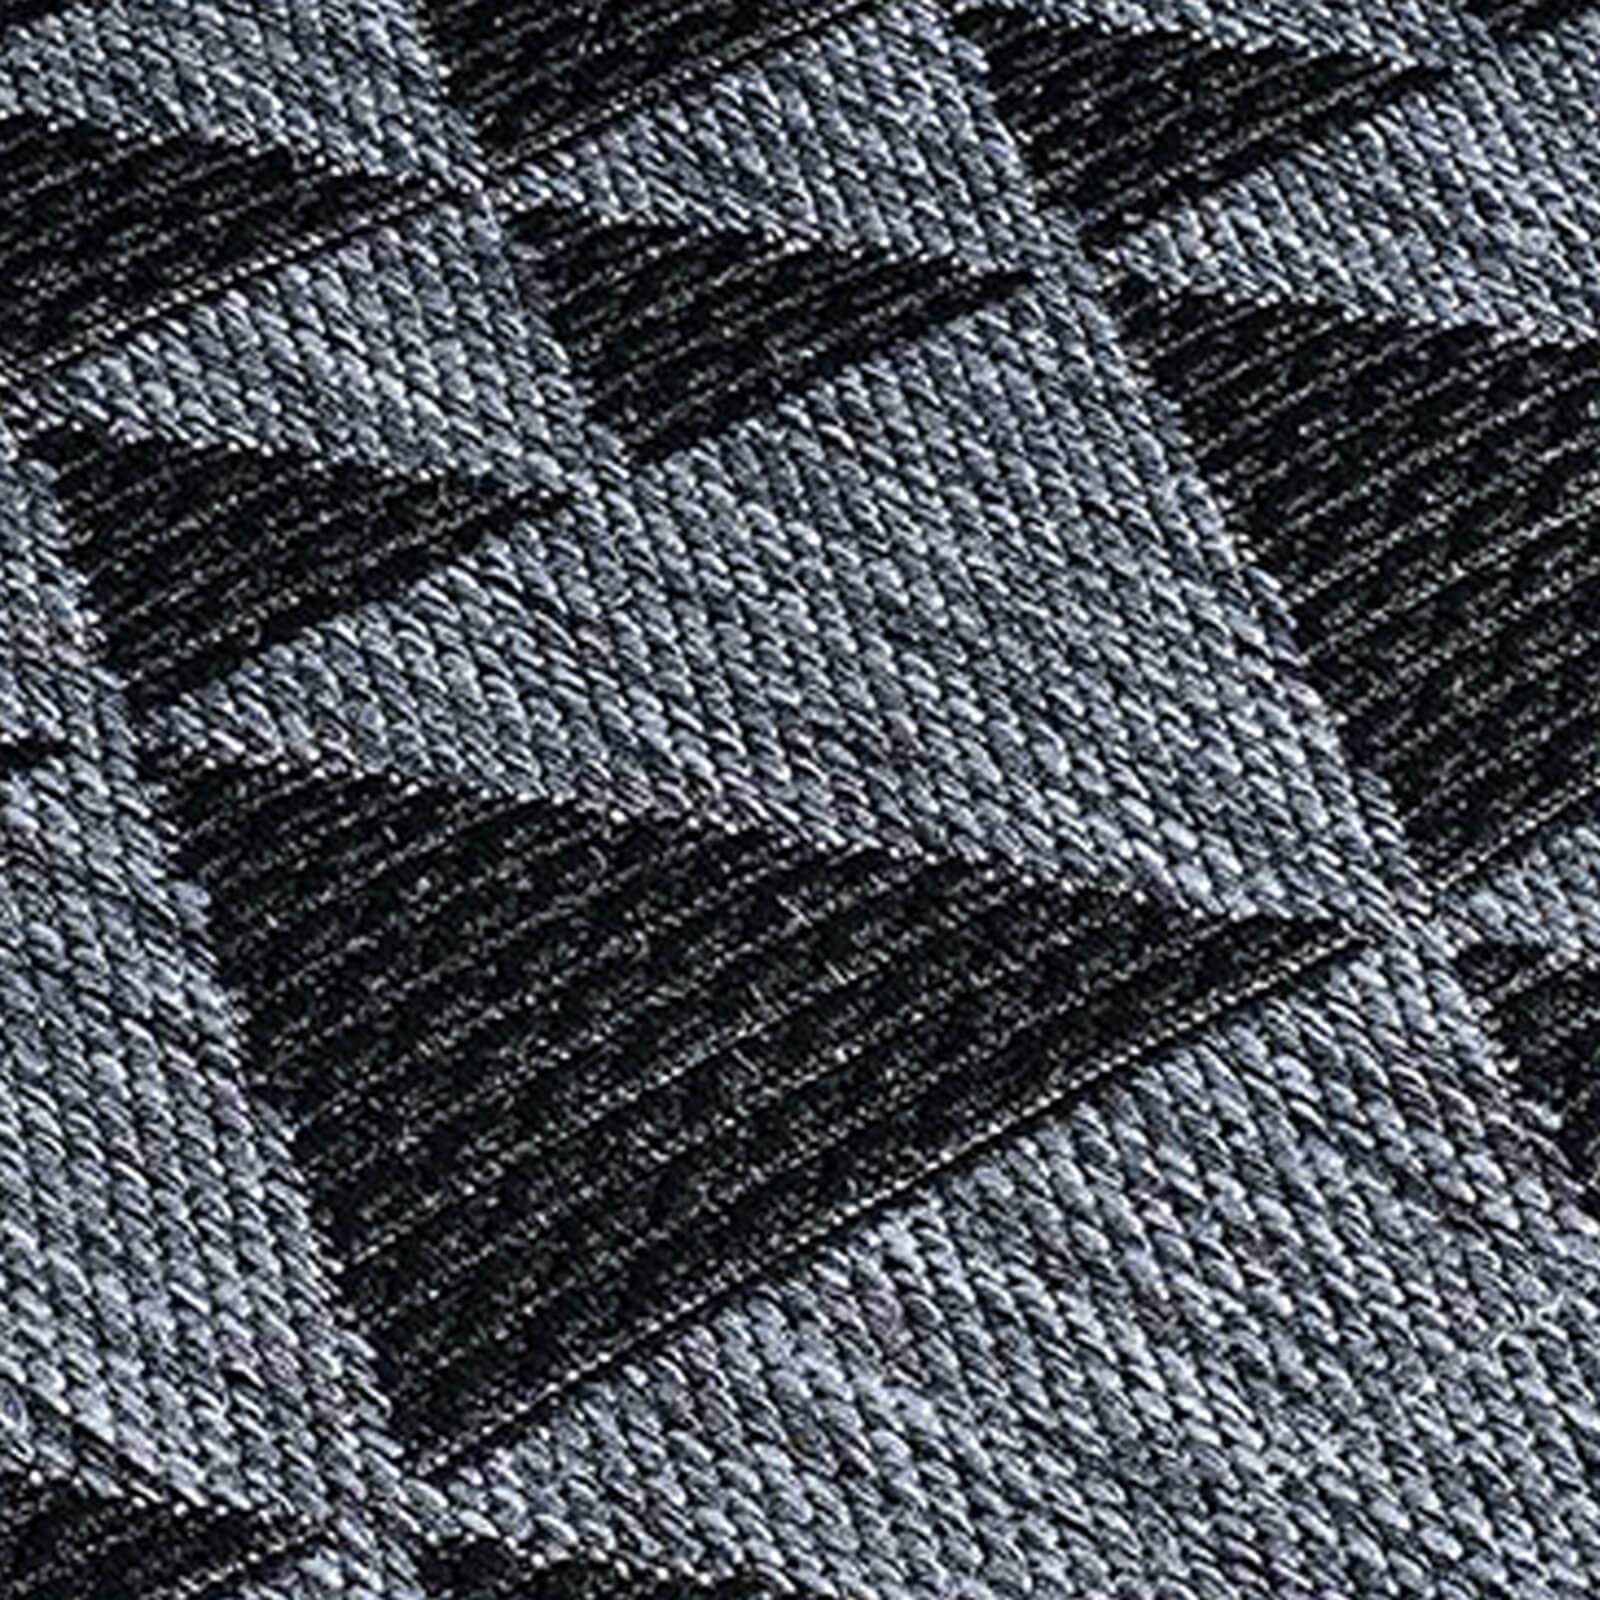 Oriental Weavers Moda Prism Black Grey Rug